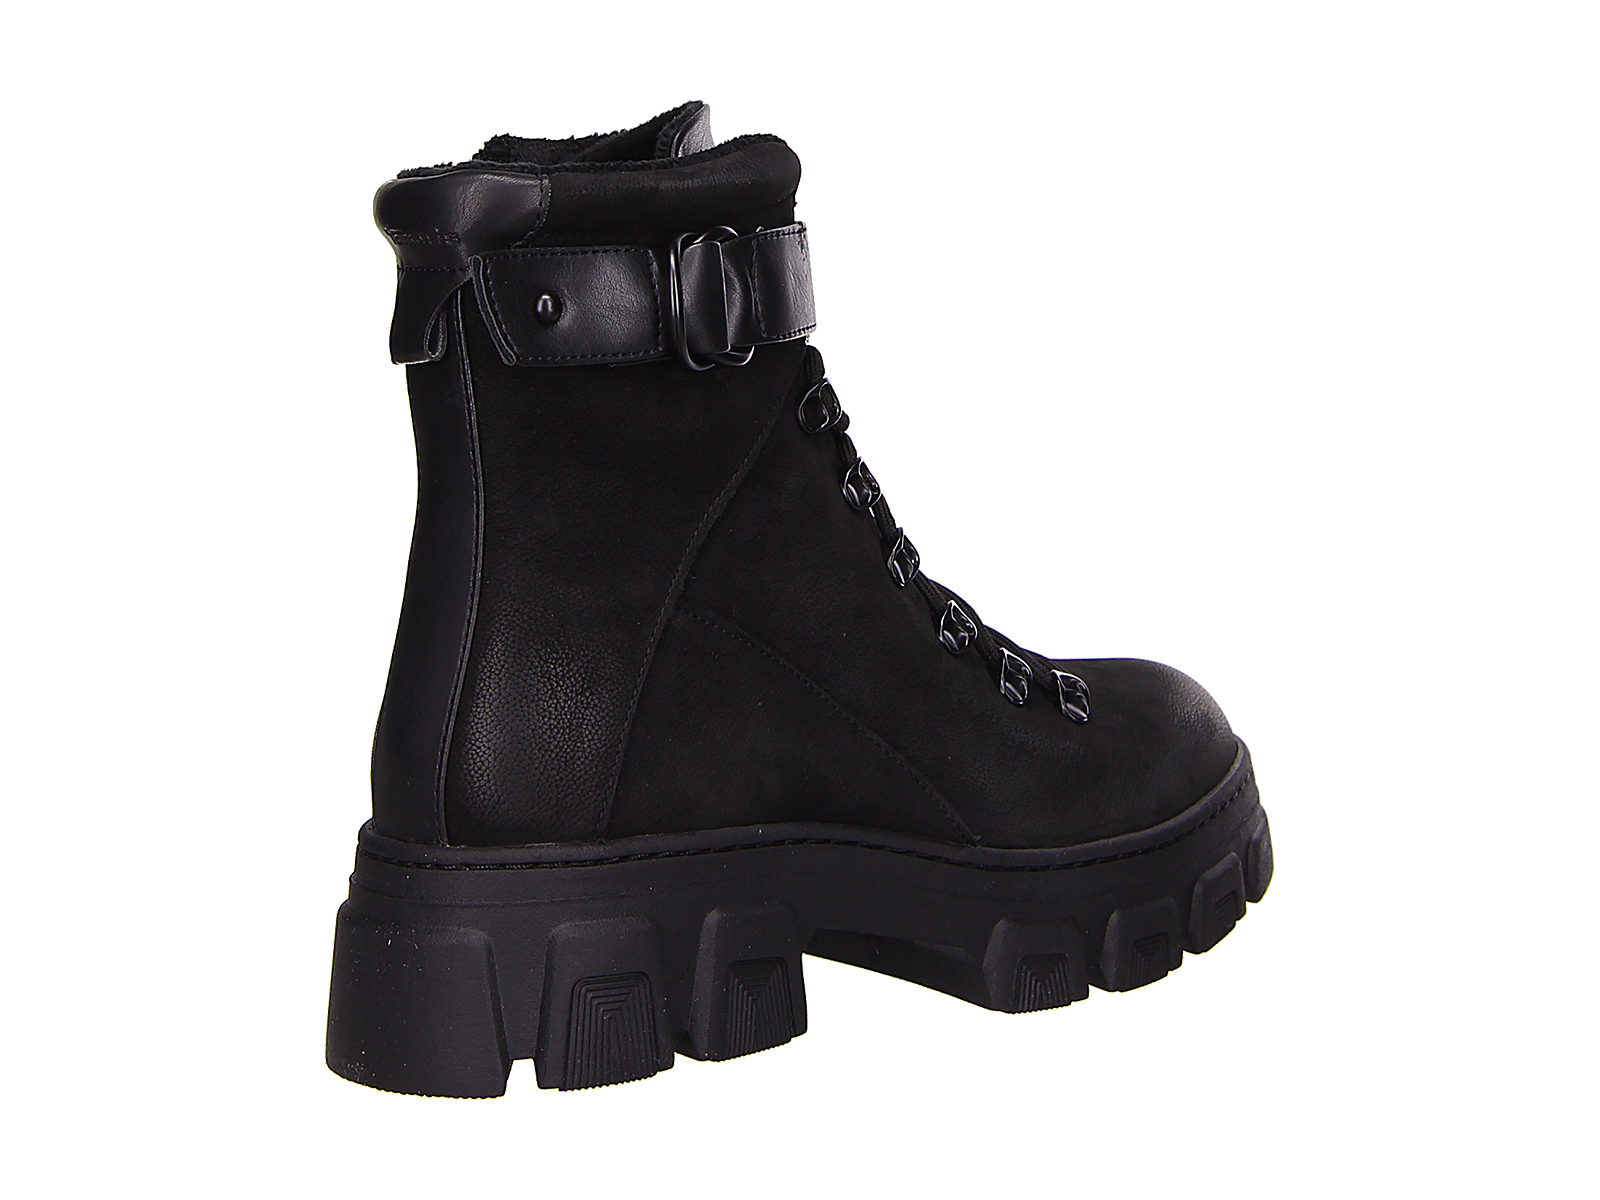 Tamaris Boots 1-1-25213-27-001